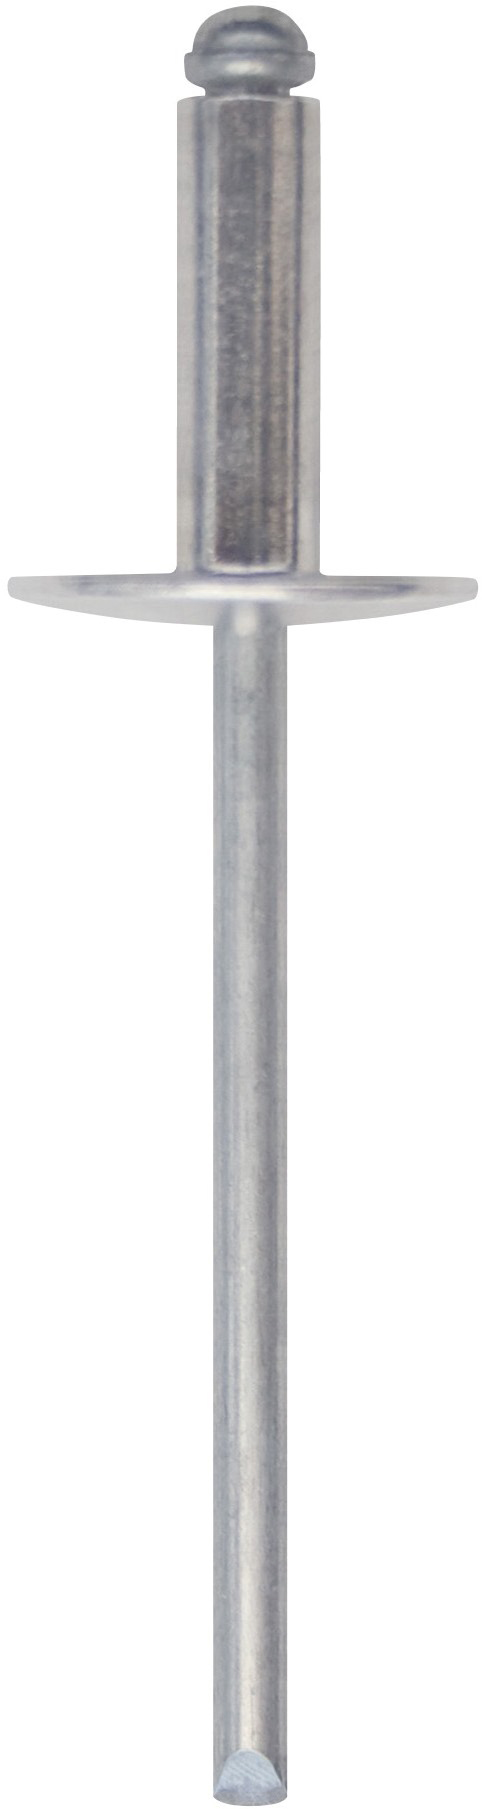 RIVEX Rivetto in alluminio con testa larga